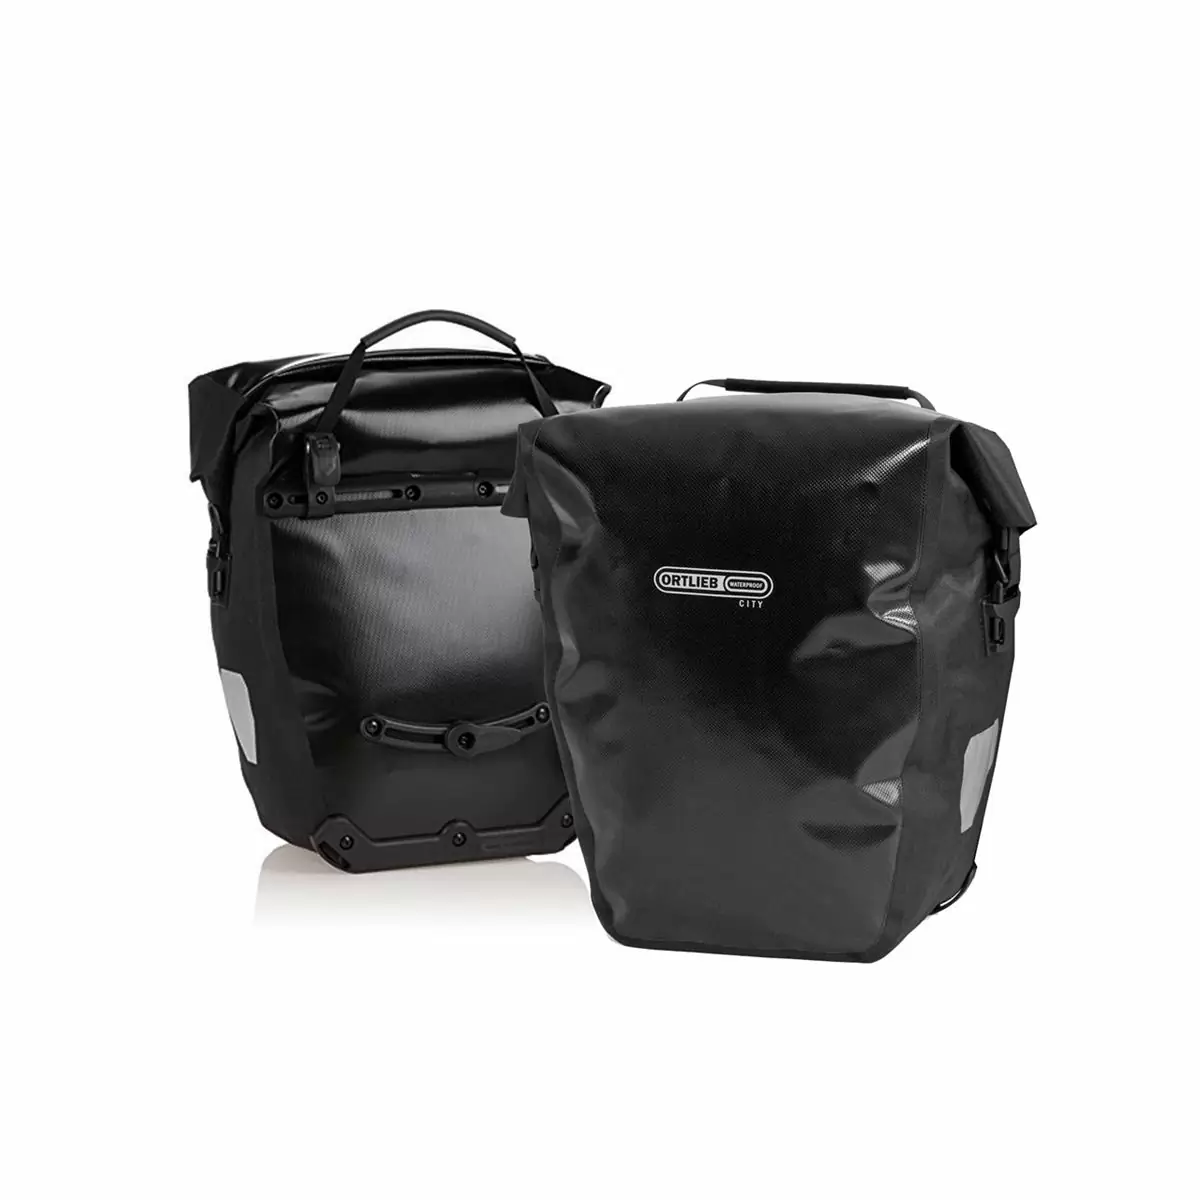 pannier bag set back-roller city f5002 ql1 black 40l - image